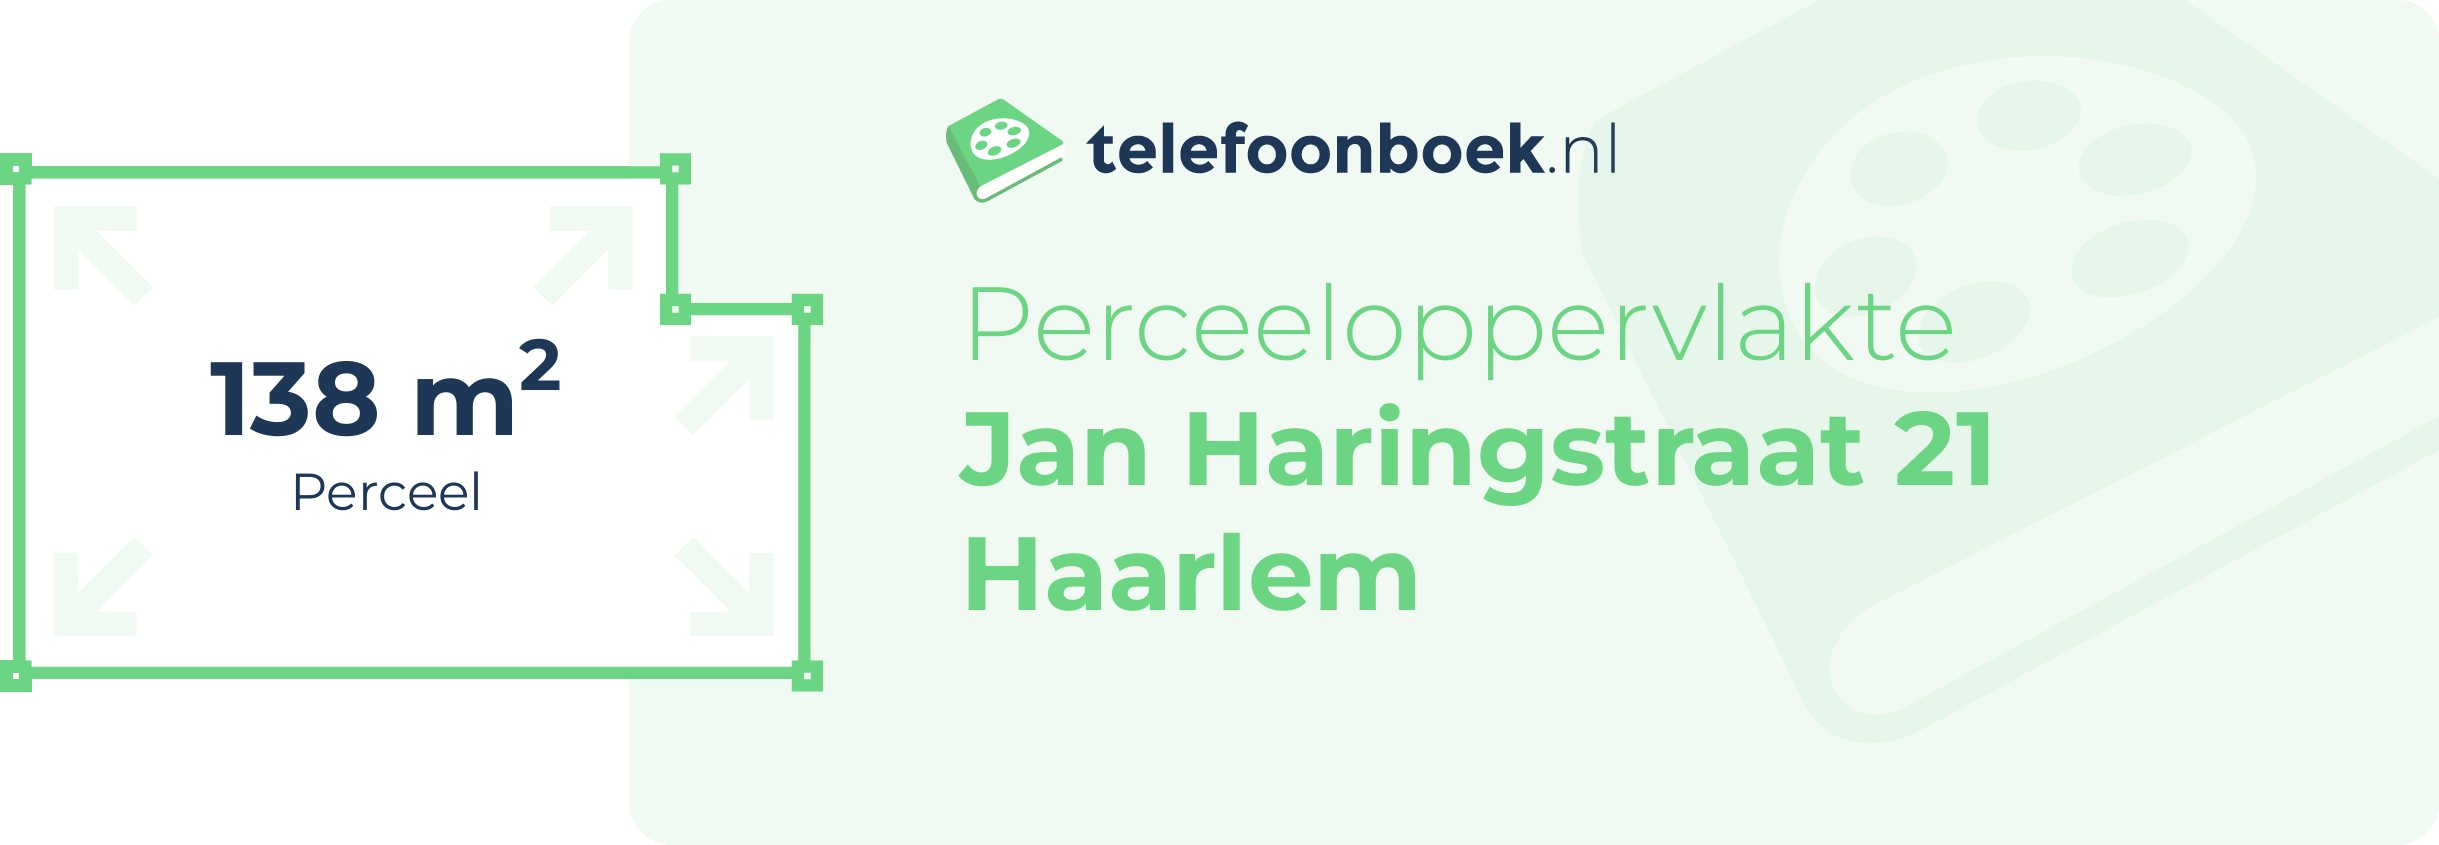 Perceeloppervlakte Jan Haringstraat 21 Haarlem